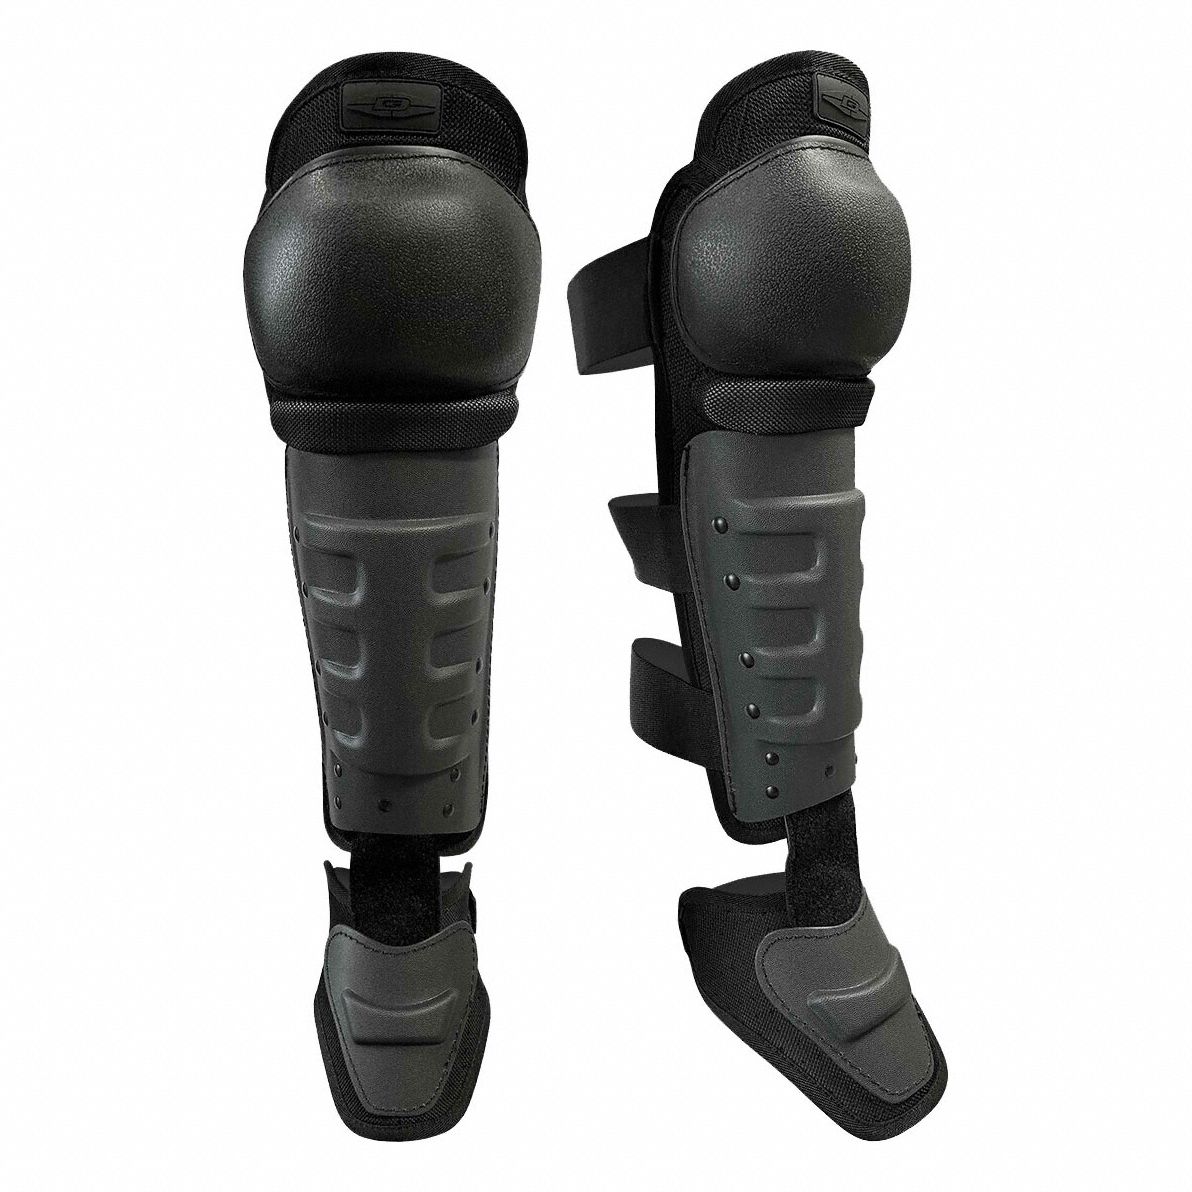 Juego de espinilleras Polainas impermeables para piernas para senderismo  protección para piernas al Romacci Juego de espinilleras